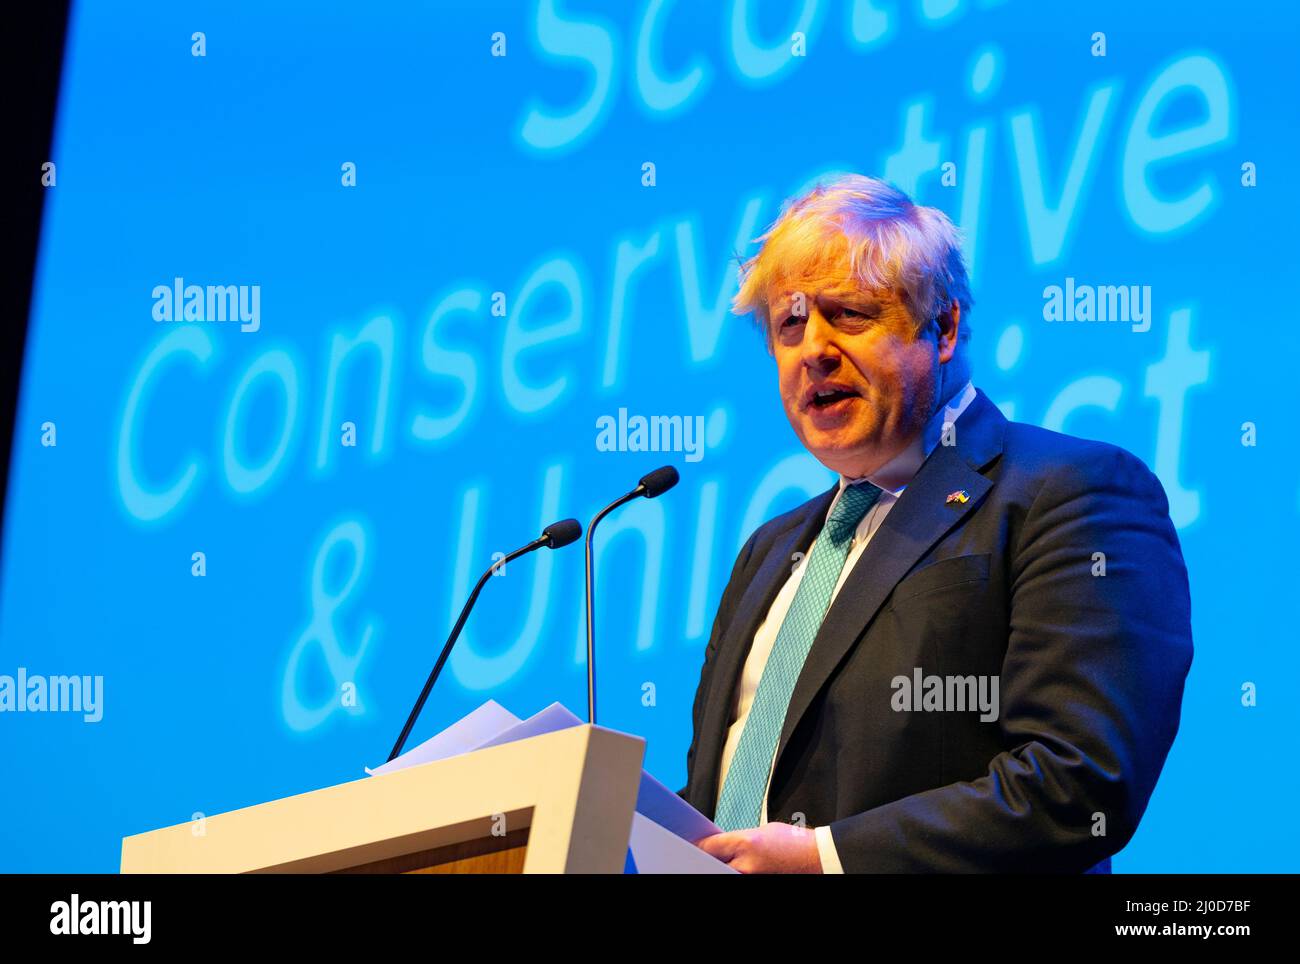 Aberdeen, Schottland, Großbritannien. 18.. März 2022. Premierminister Boris Johnson Keynote-Rede auf der Konferenz der konservativen Partei Schottlands 2022 auf der P&J-Konferenz in Aberdeen, Schottland. Iain Masterton/Alamy Live News Stockfoto